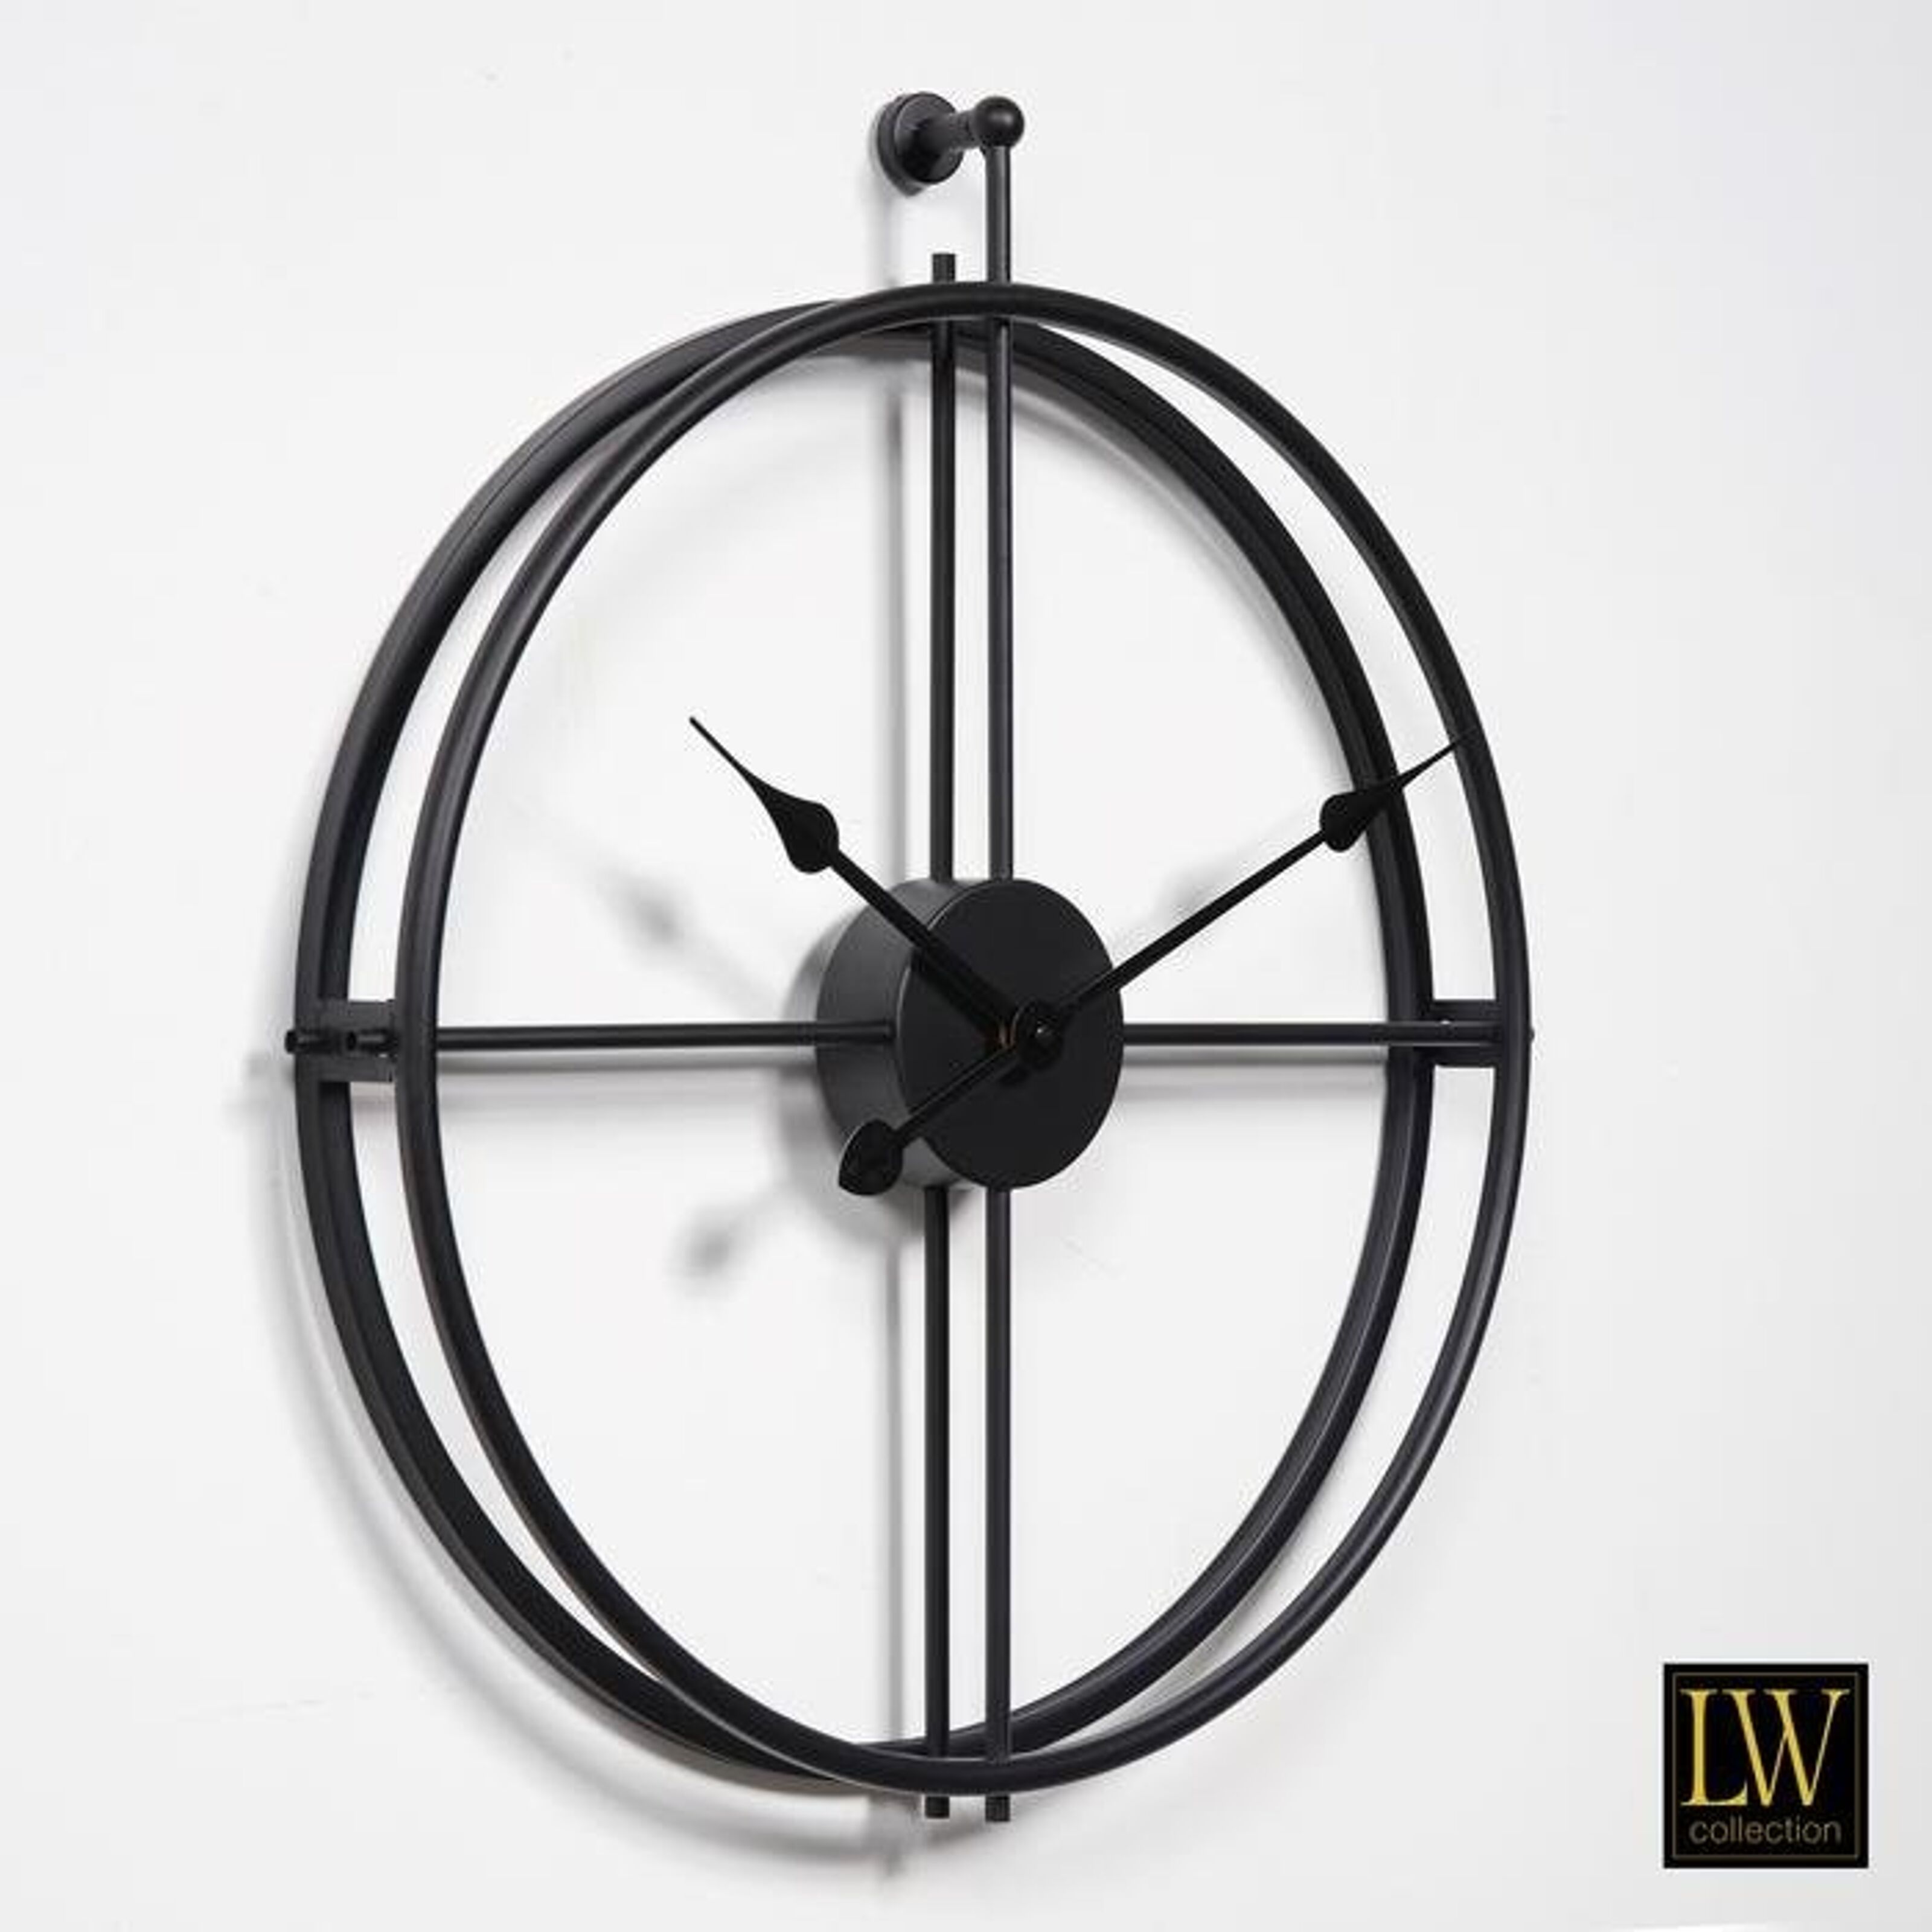 Kaufen Sie Wanduhr Alberto schwarz 52cm - Wanduhr Modern - Leises Uhrwerk -  Industrielle Wanduhr zu Großhandelspreisen